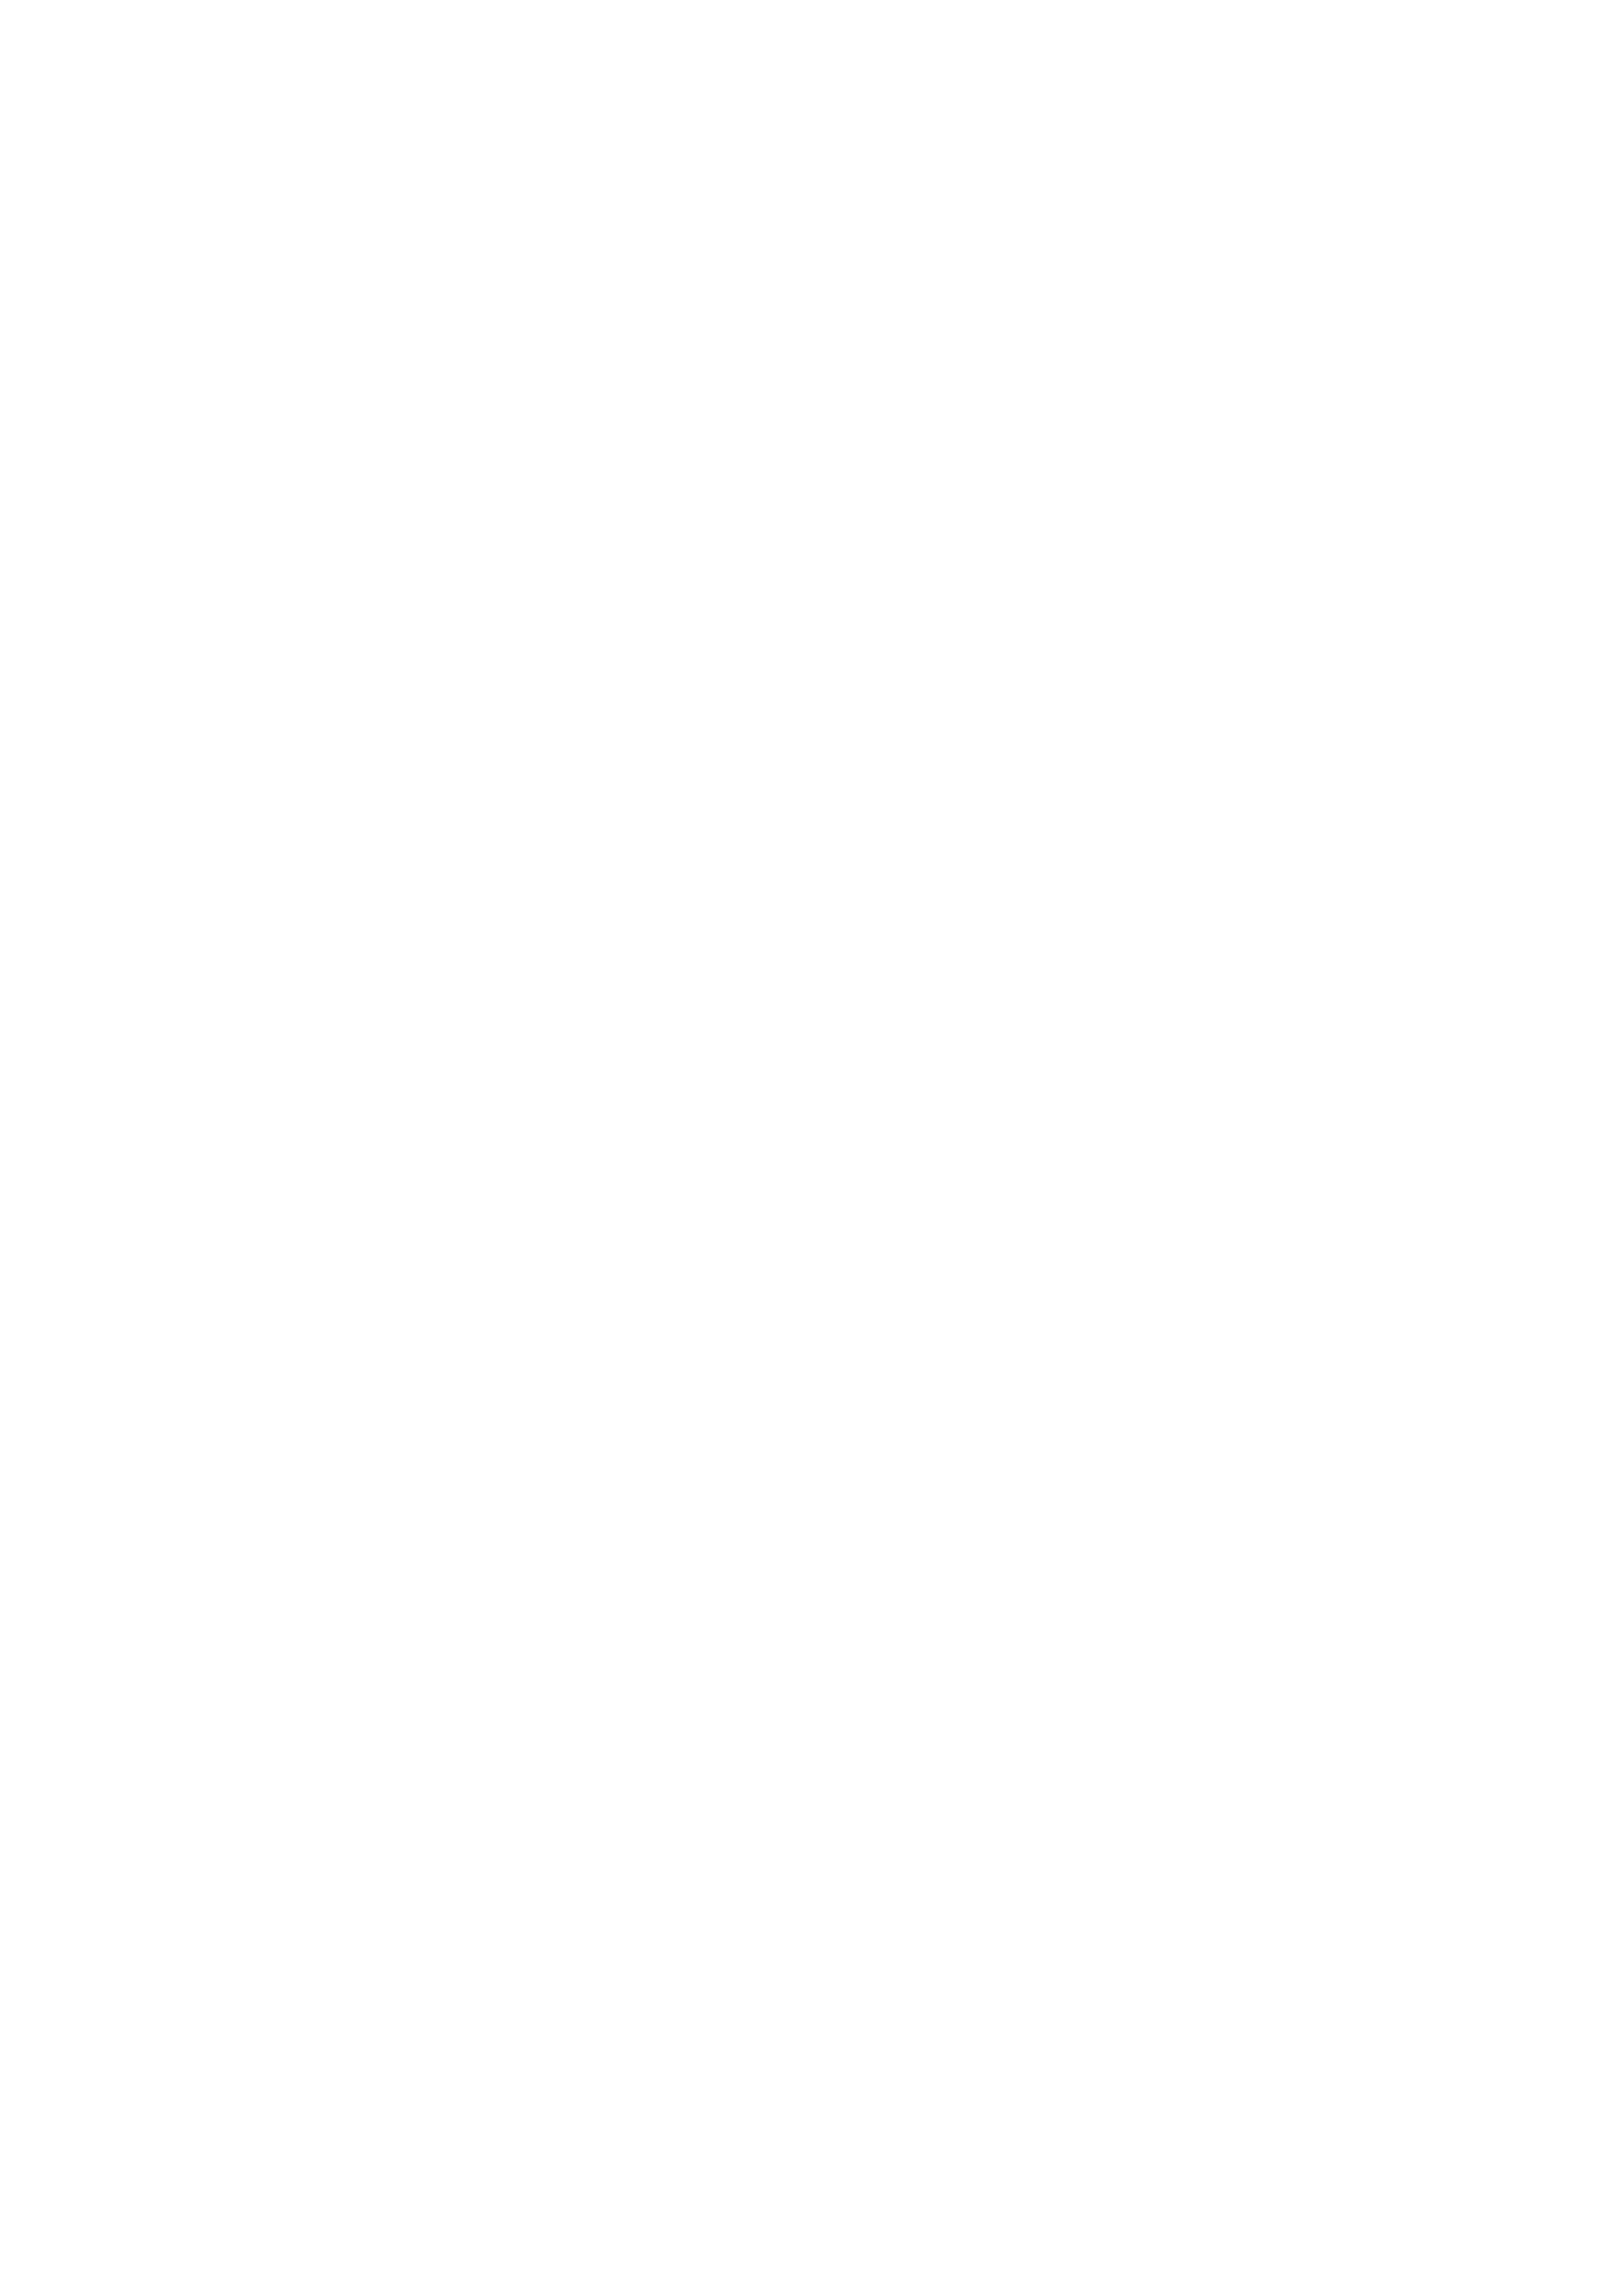 ГОСТ ISO 7899-2-2018. Страница 6